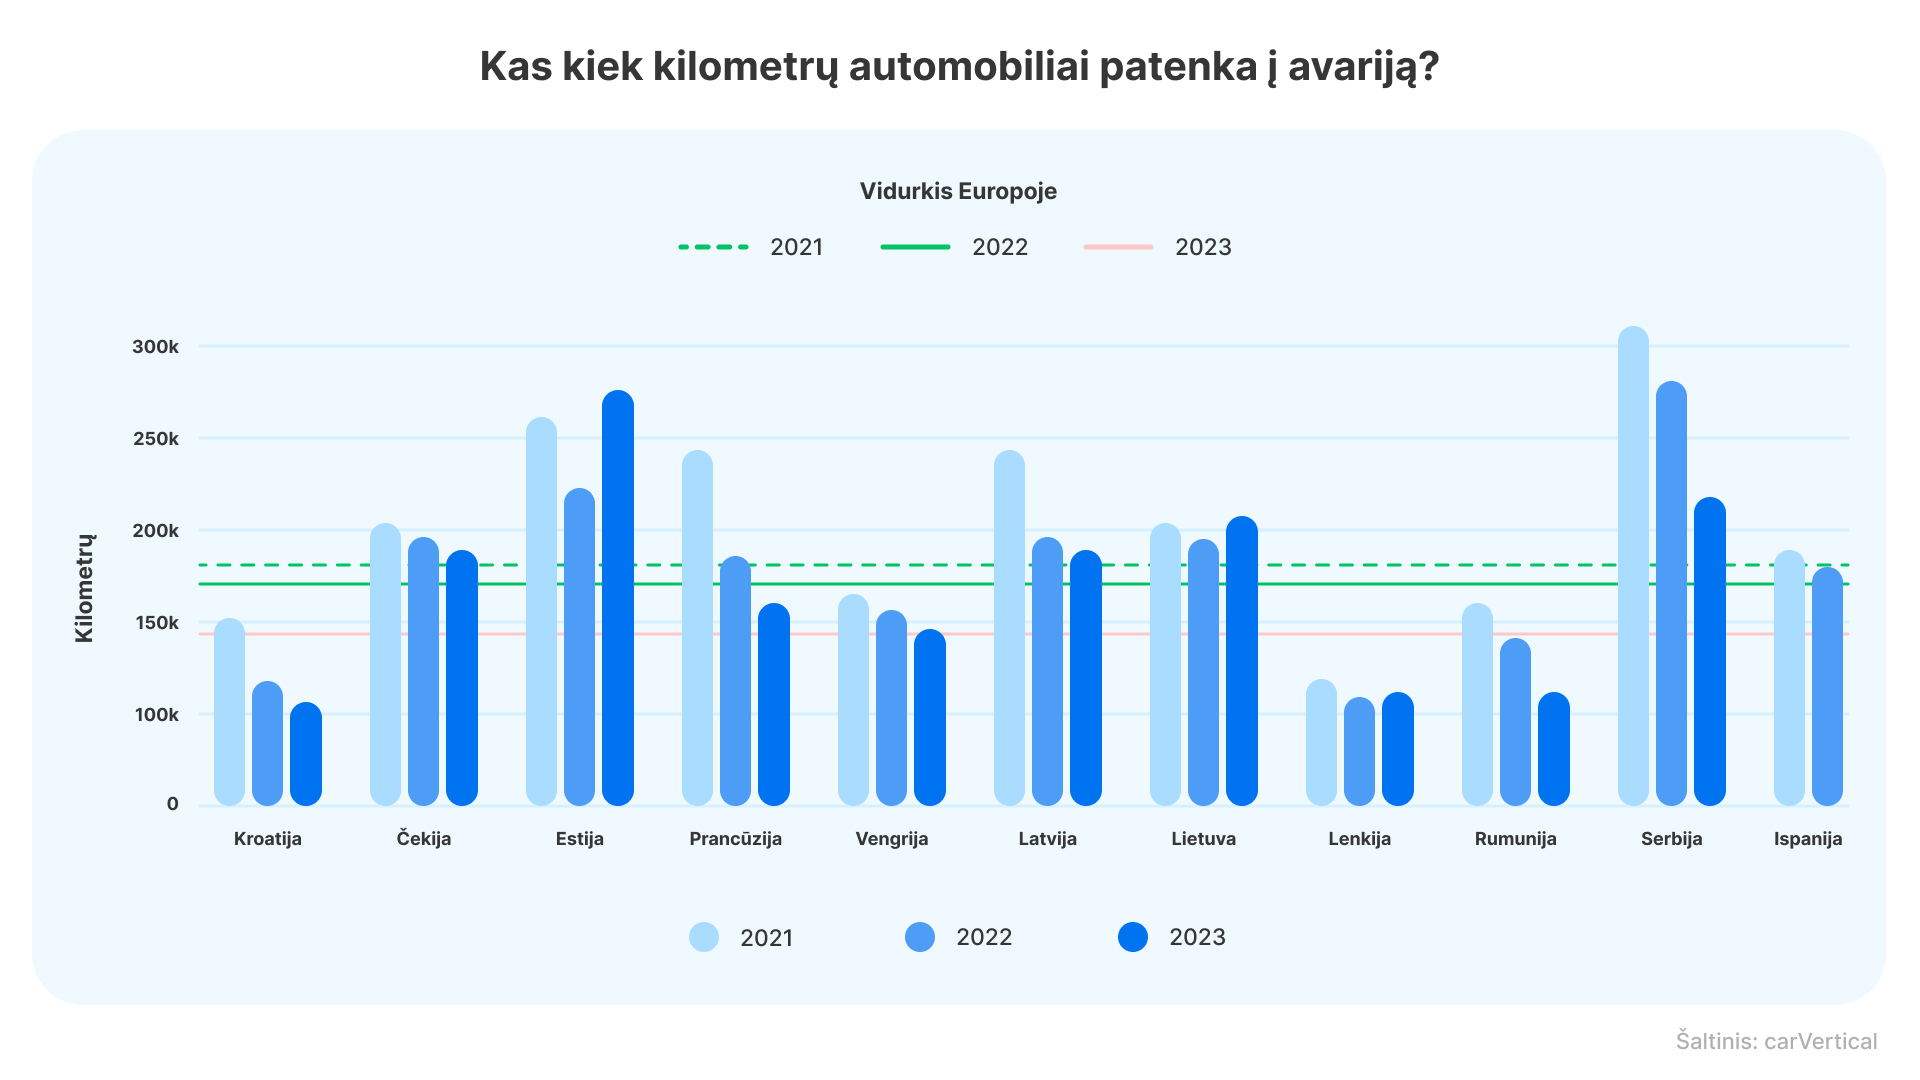 Lietuvių perkami automobiliai į avarijas patenka kas 215 tūkst. kilometrų